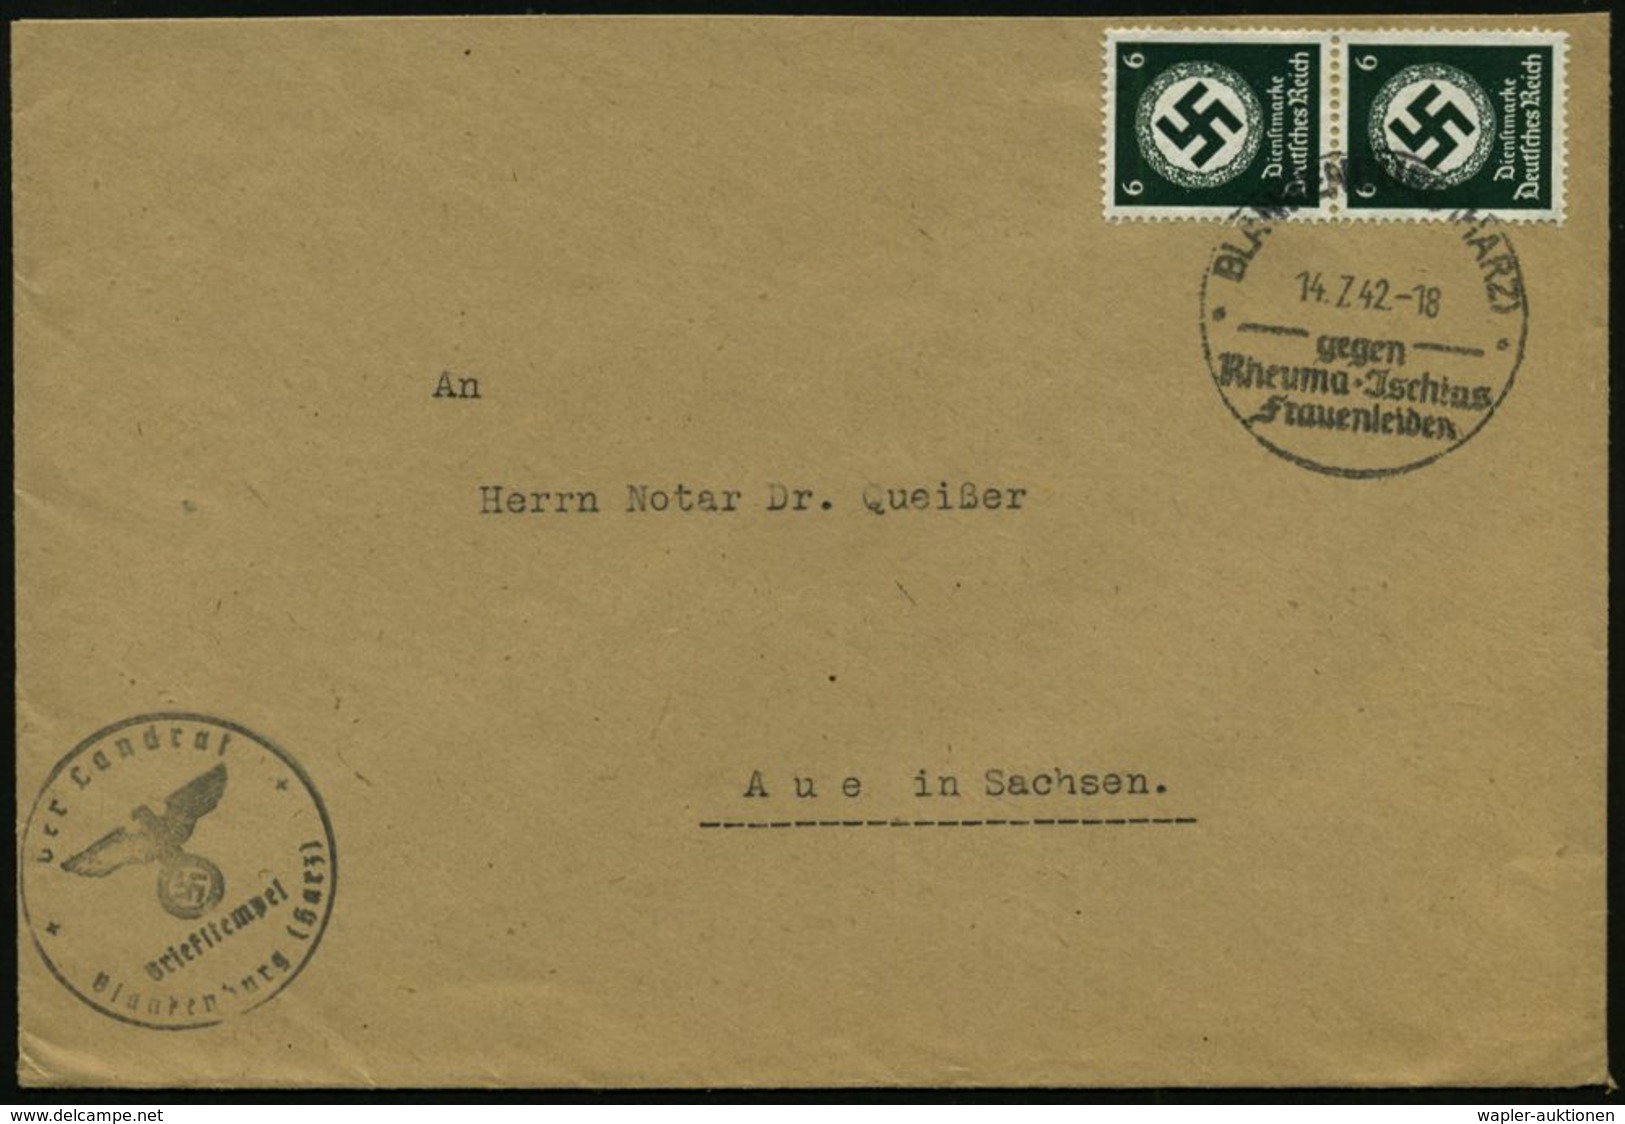 RHEUMATISMUS : BLANKENBURG (HARZ)/ Gegen/ Rheuma-Jschias/ Frauenleiden 1942 (14.7.) HWSt Auf Paar 6 Pf. Behördendienst + - Maladies